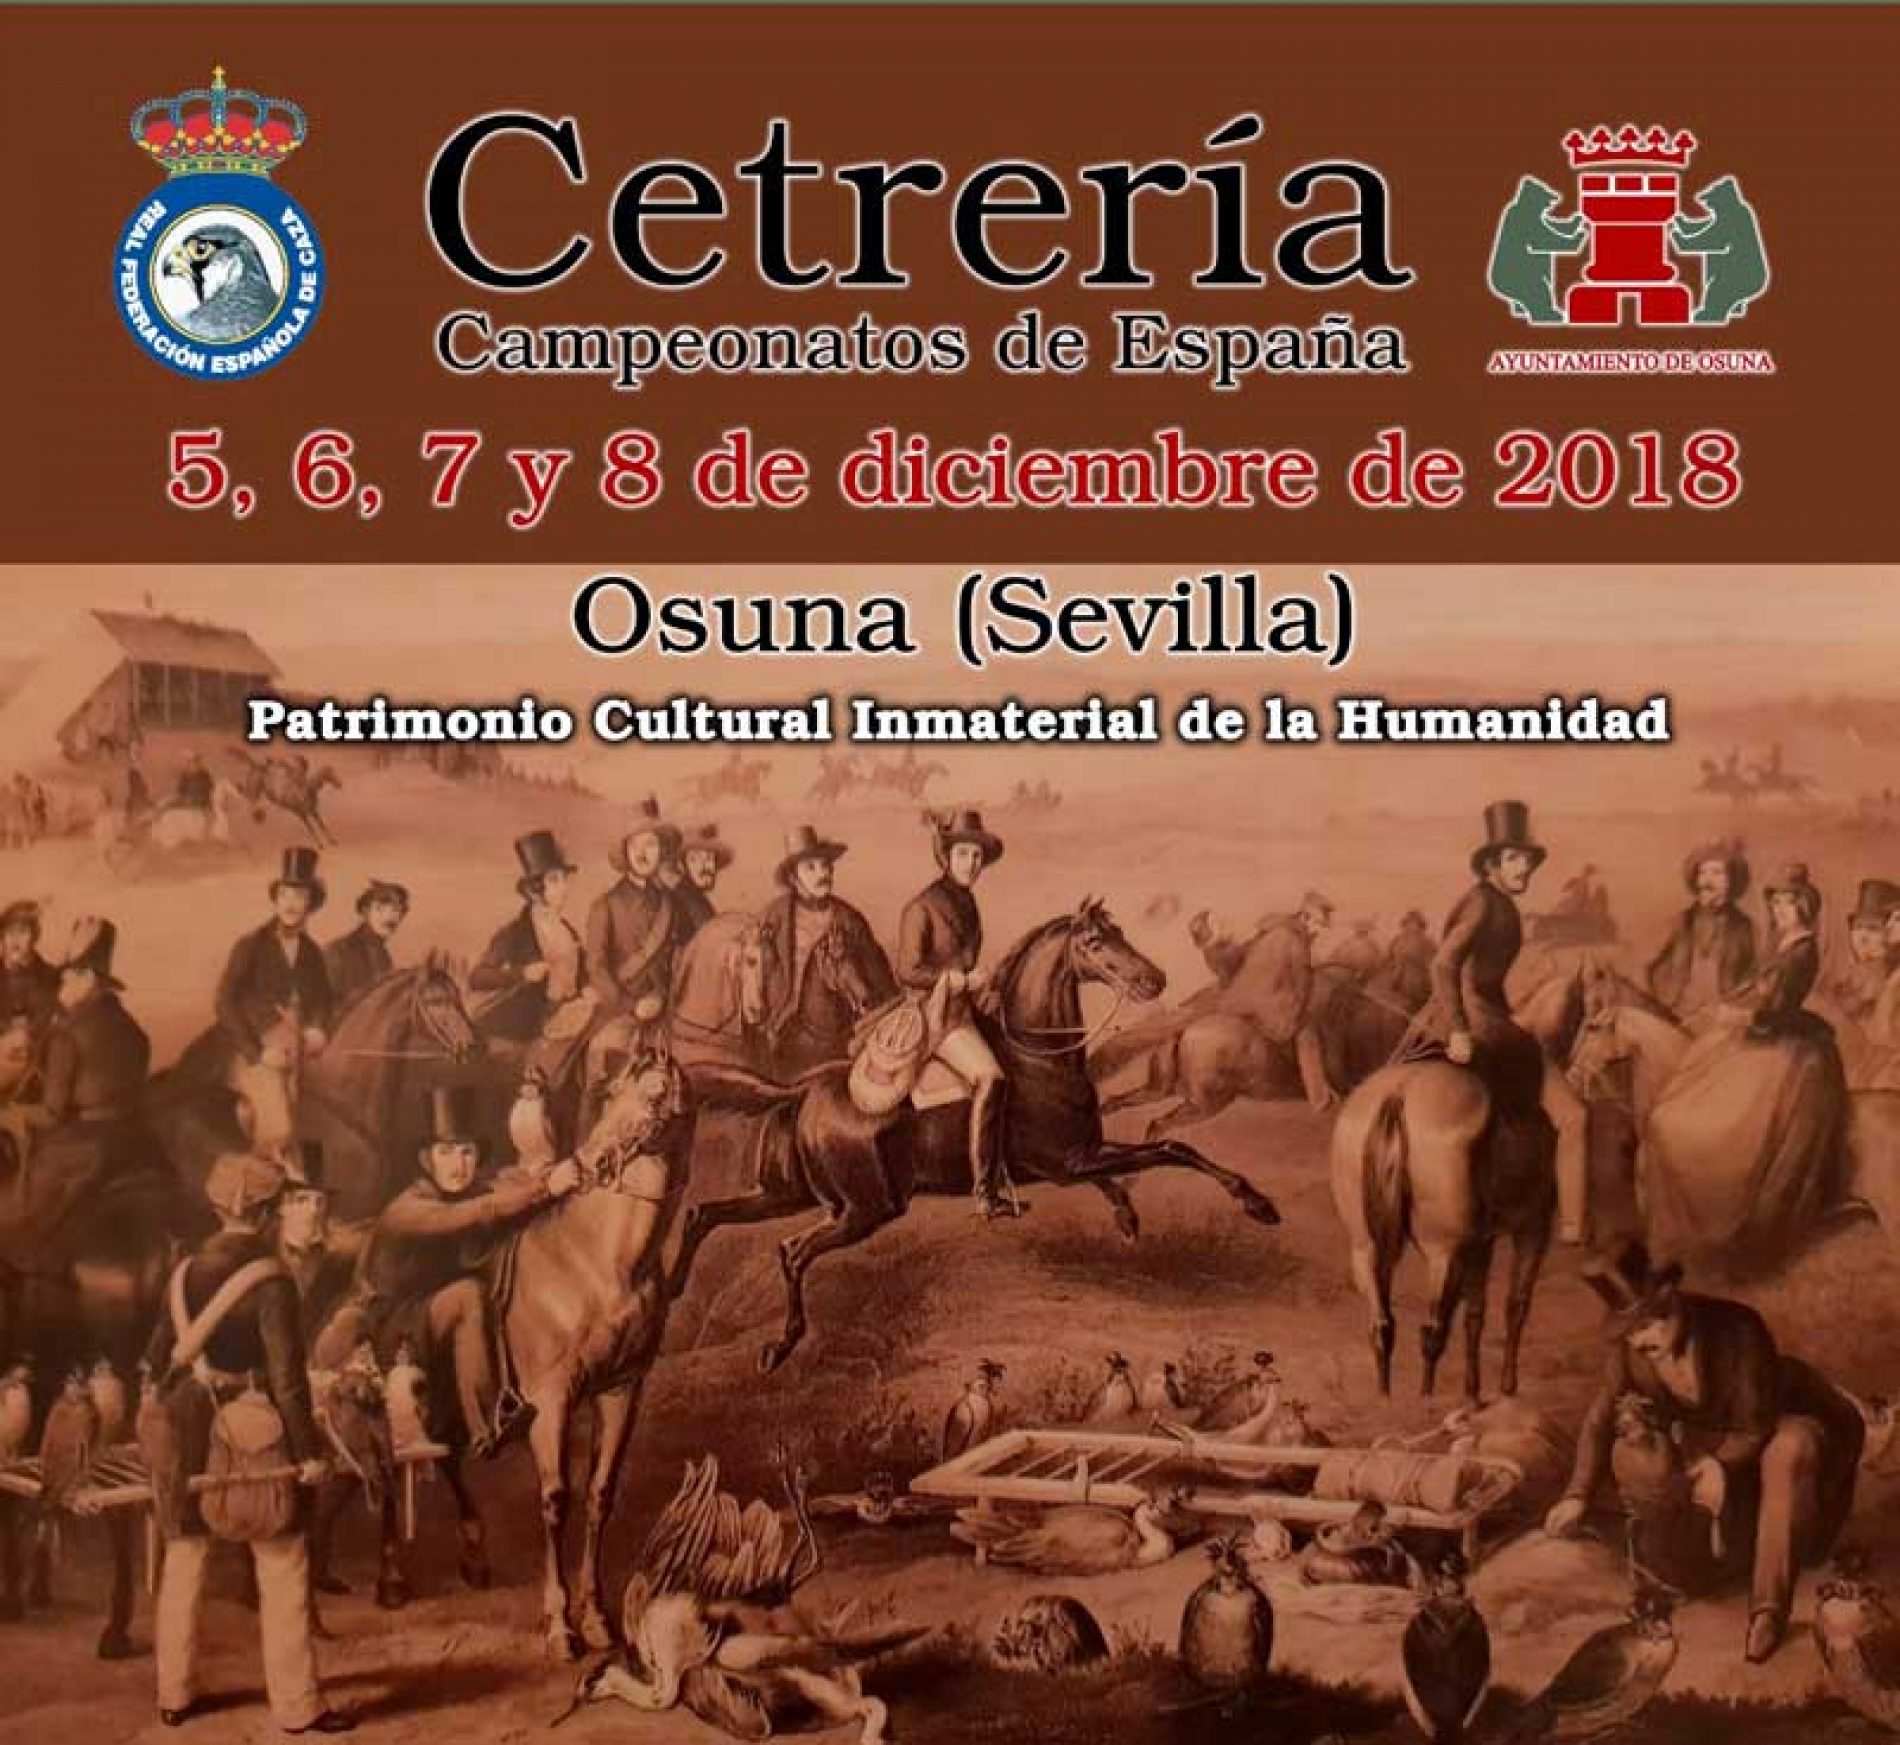 La cetrería tiene una cita en Osuna en los Campeonatos de España 2018